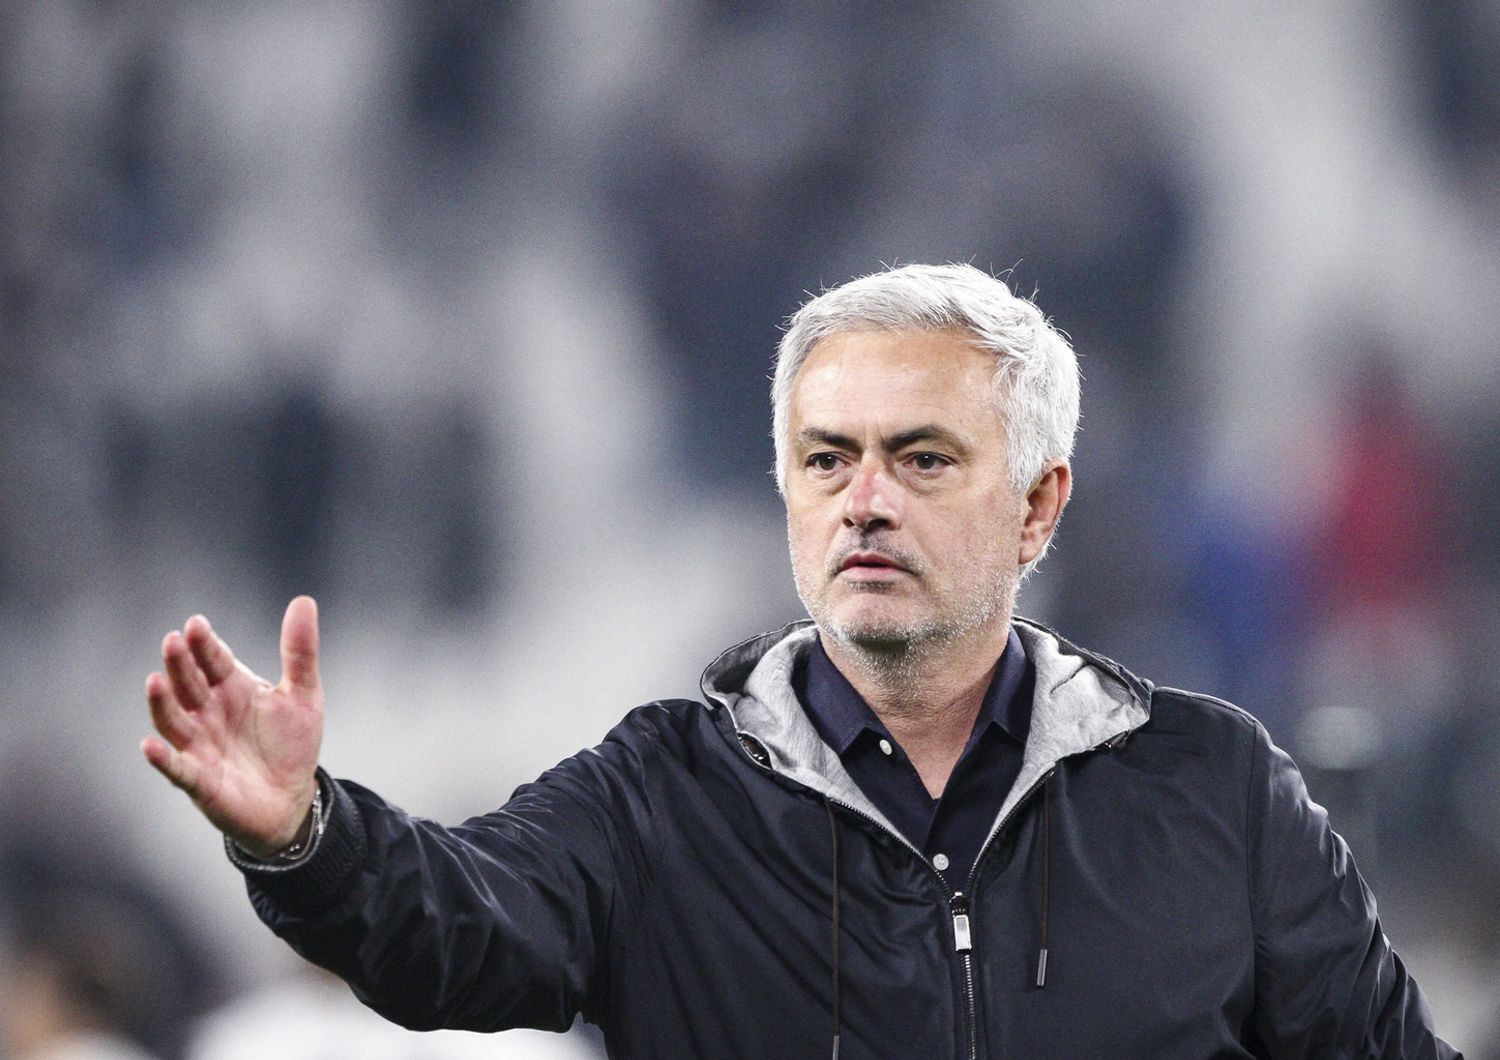 allenatore della Roma, Jose Mourinho